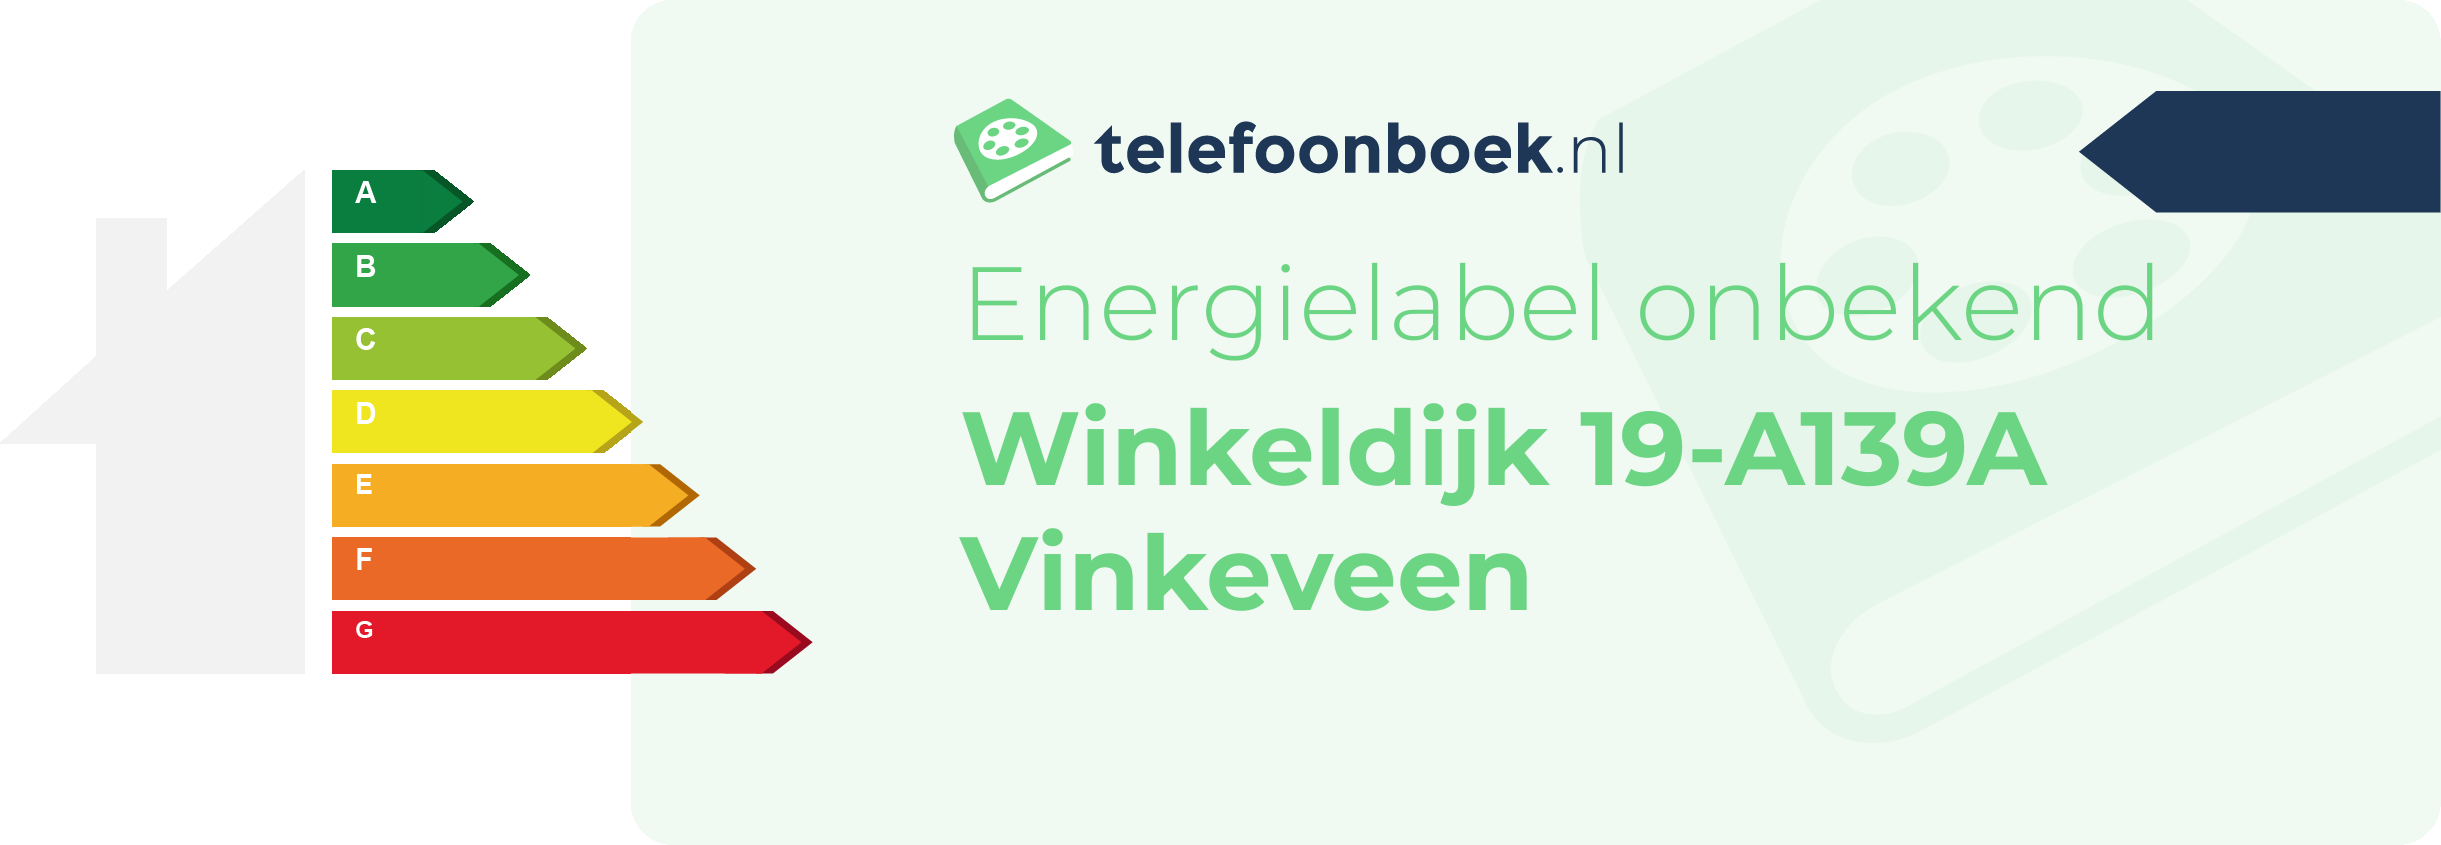 Energielabel Winkeldijk 19-A139A Vinkeveen